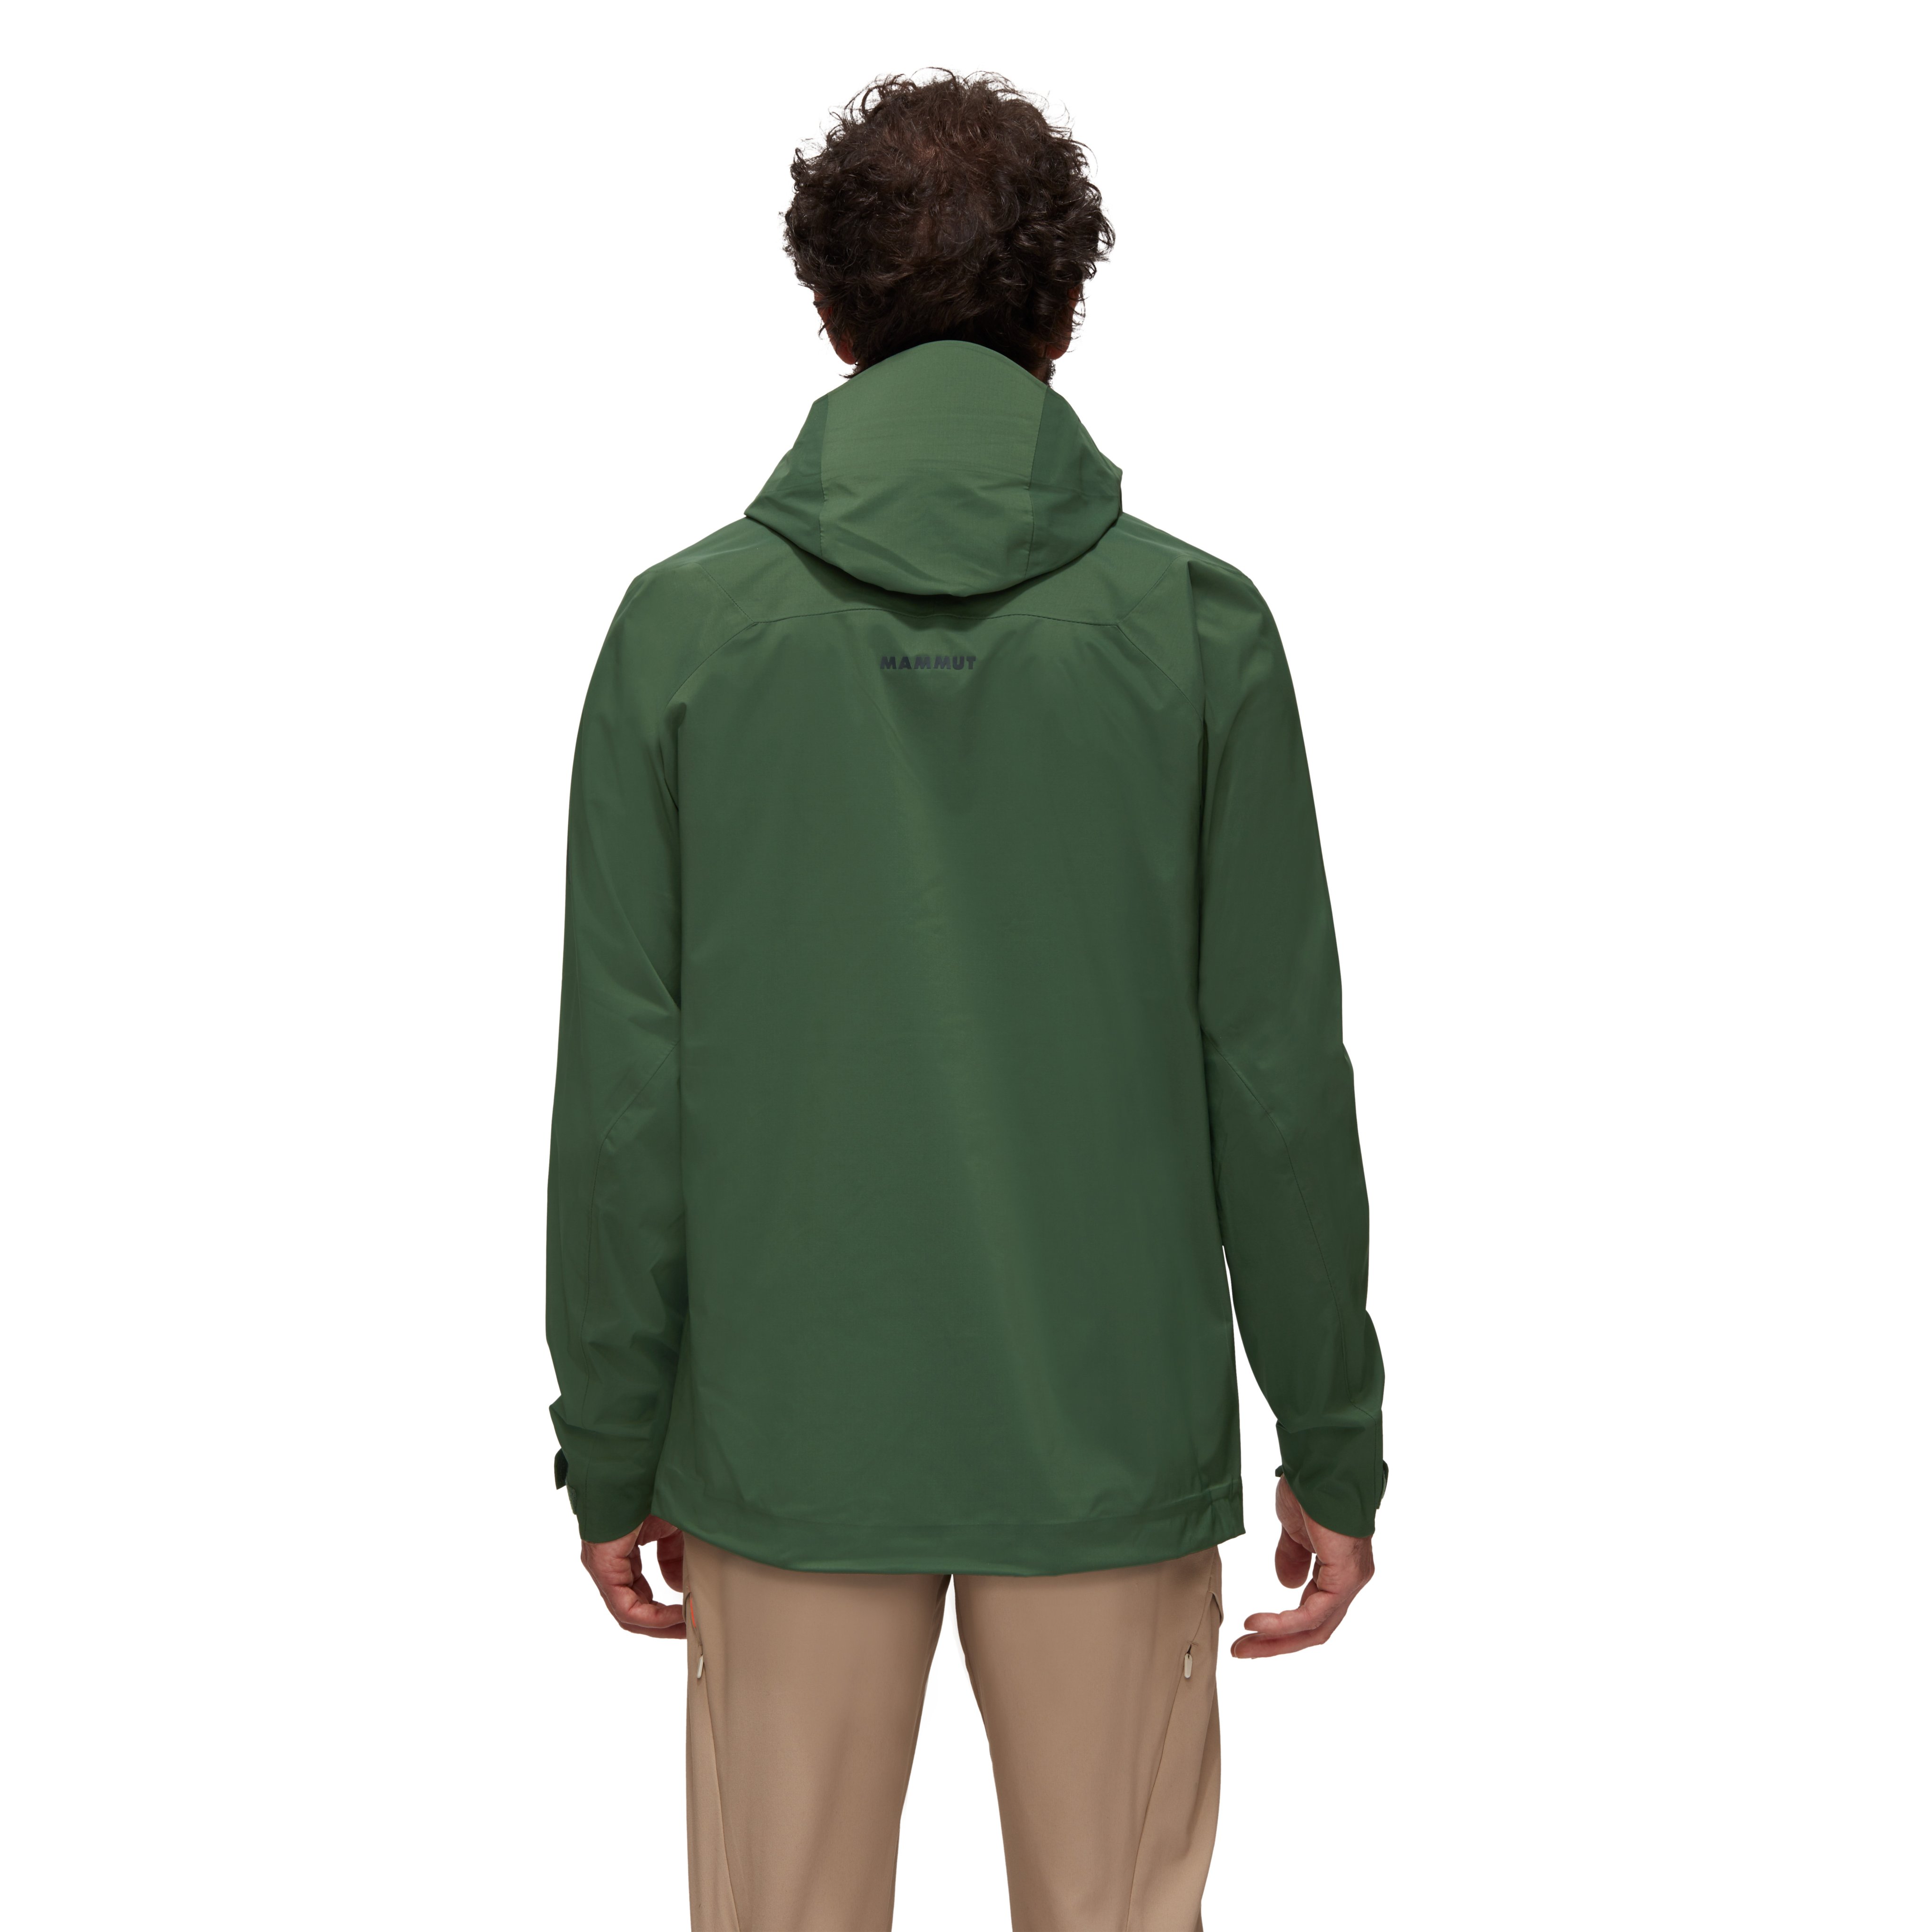 Kento HS Hooded Jacket Men product image